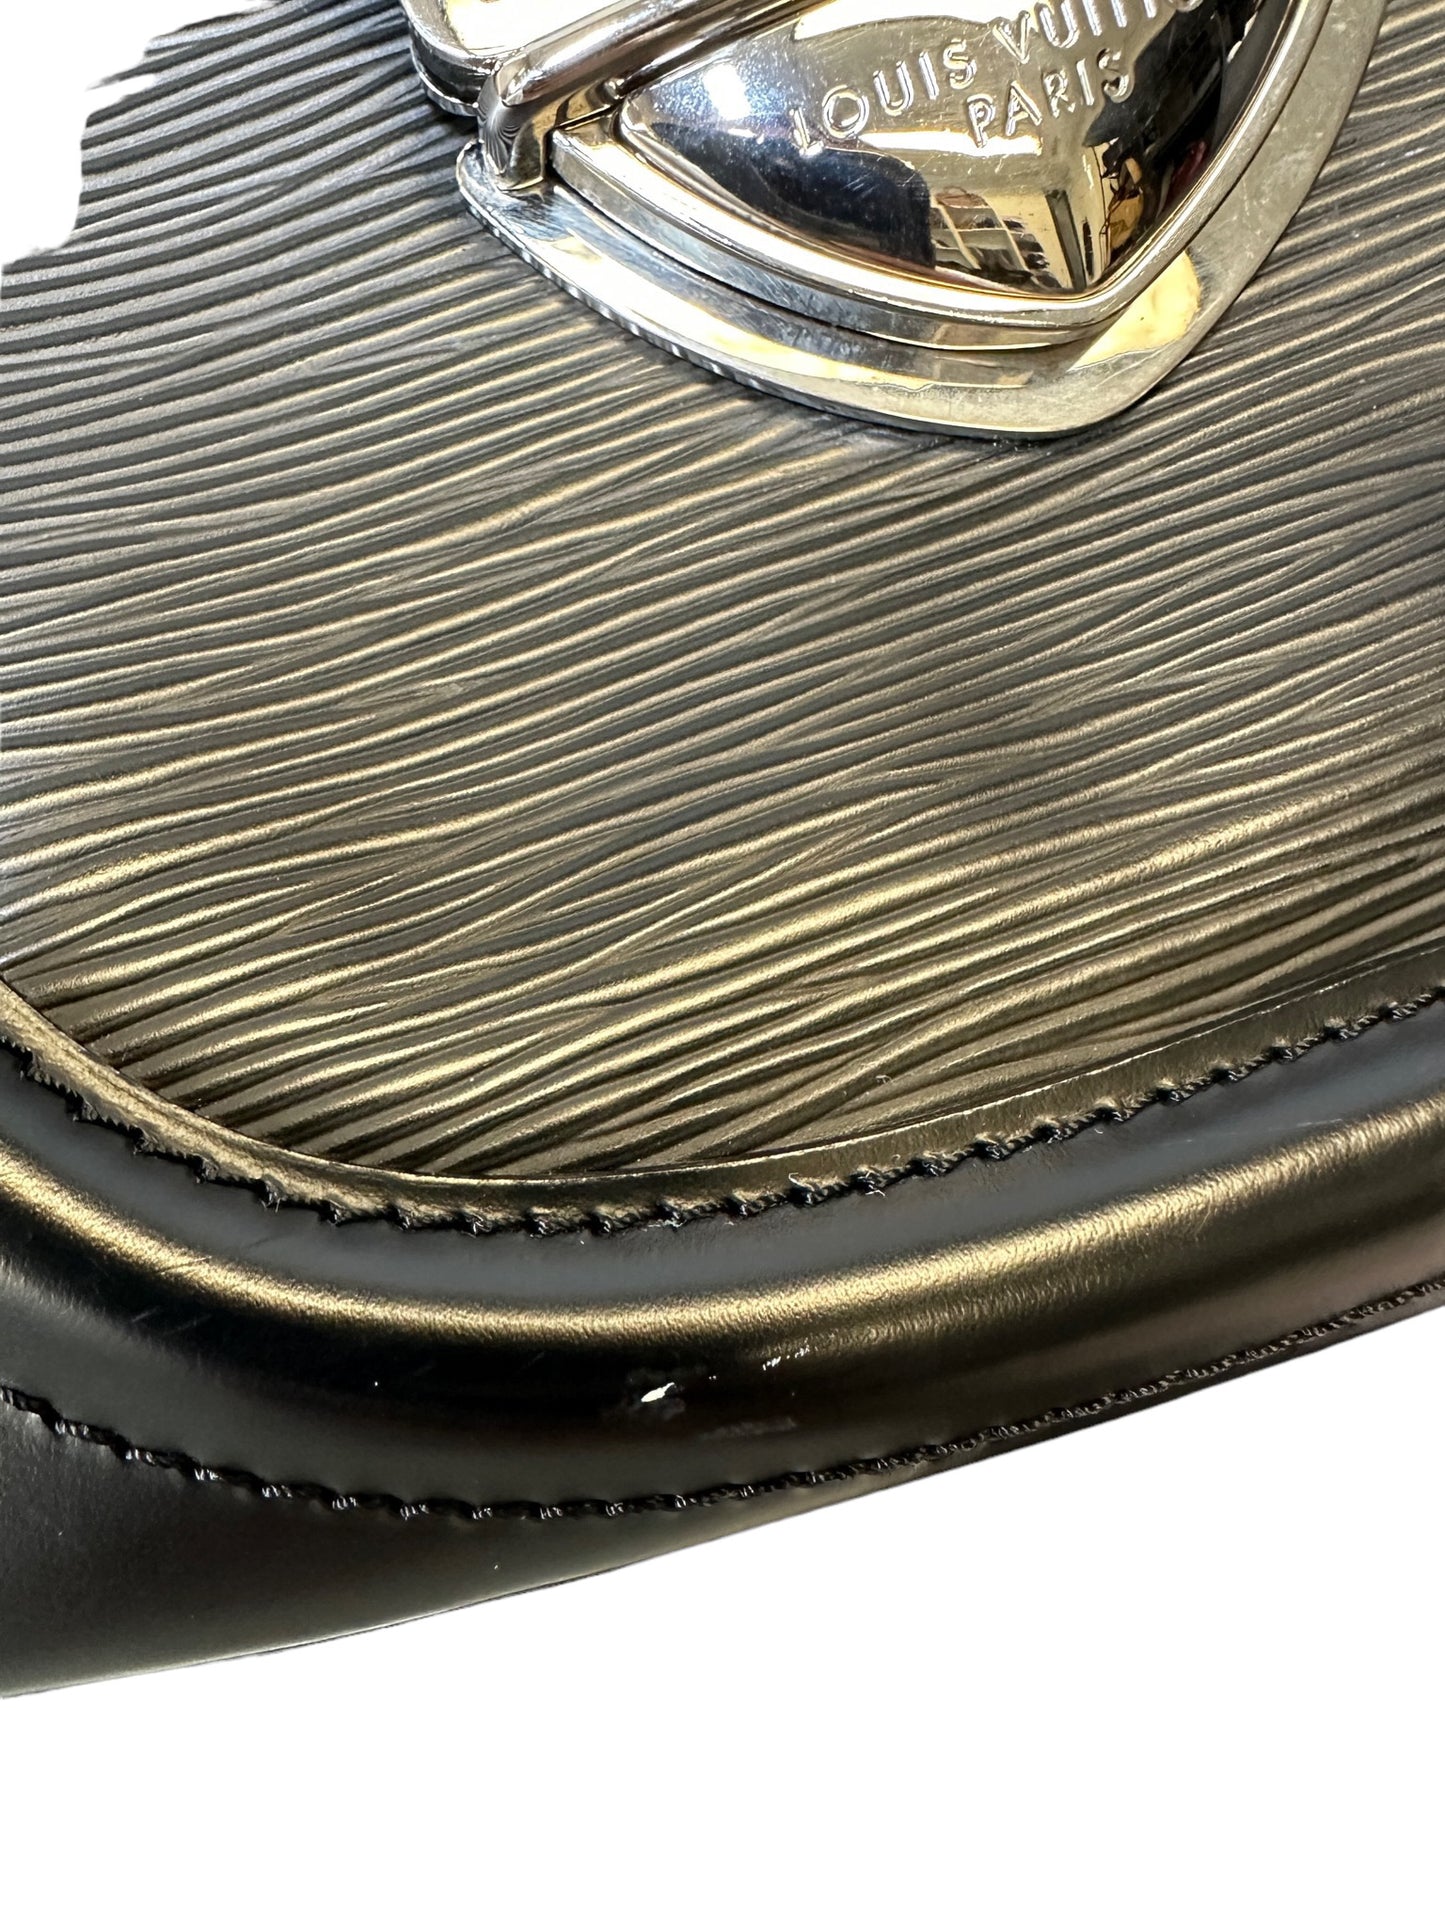 LOUIS VUITTON - Montaigne Sac Handbag Epi Leather